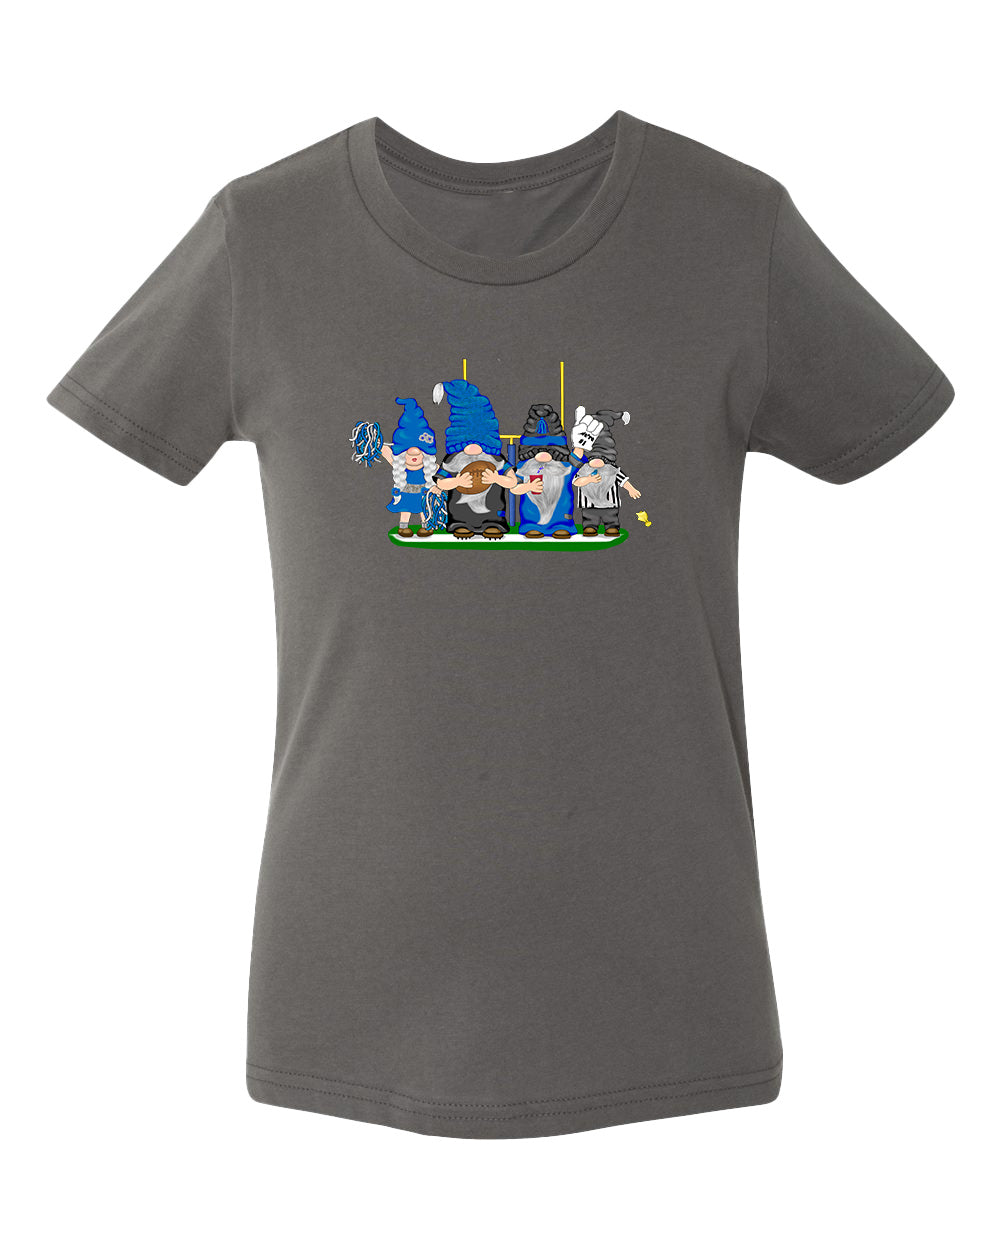 Blue & Black Football Gnomes  (similar to Carolina) on Kids T-shirt